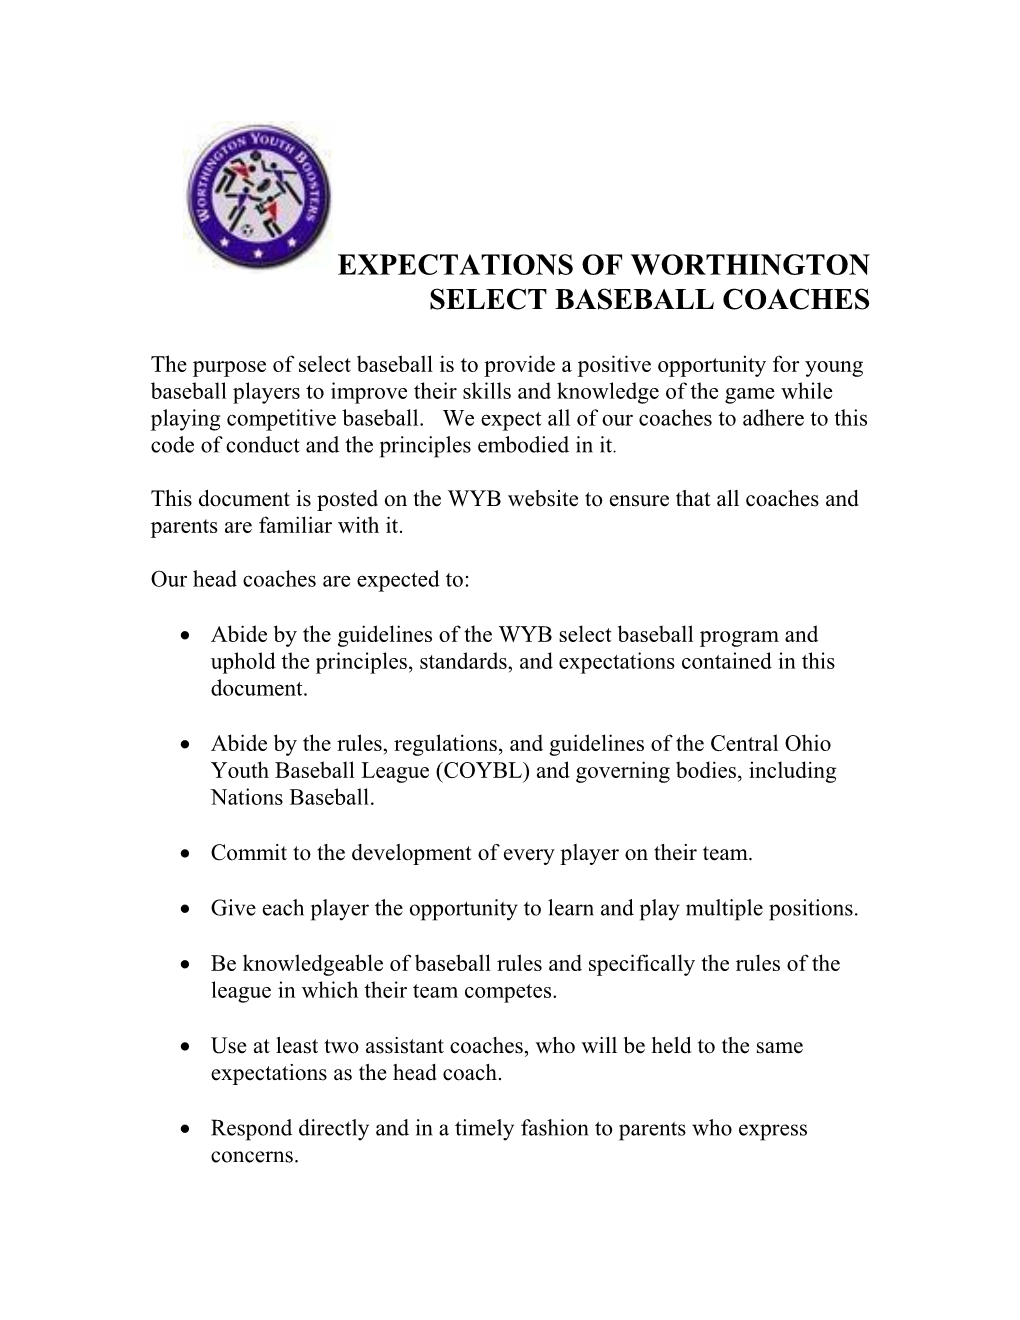 Expectations of Worthington Select Baseball Coaches